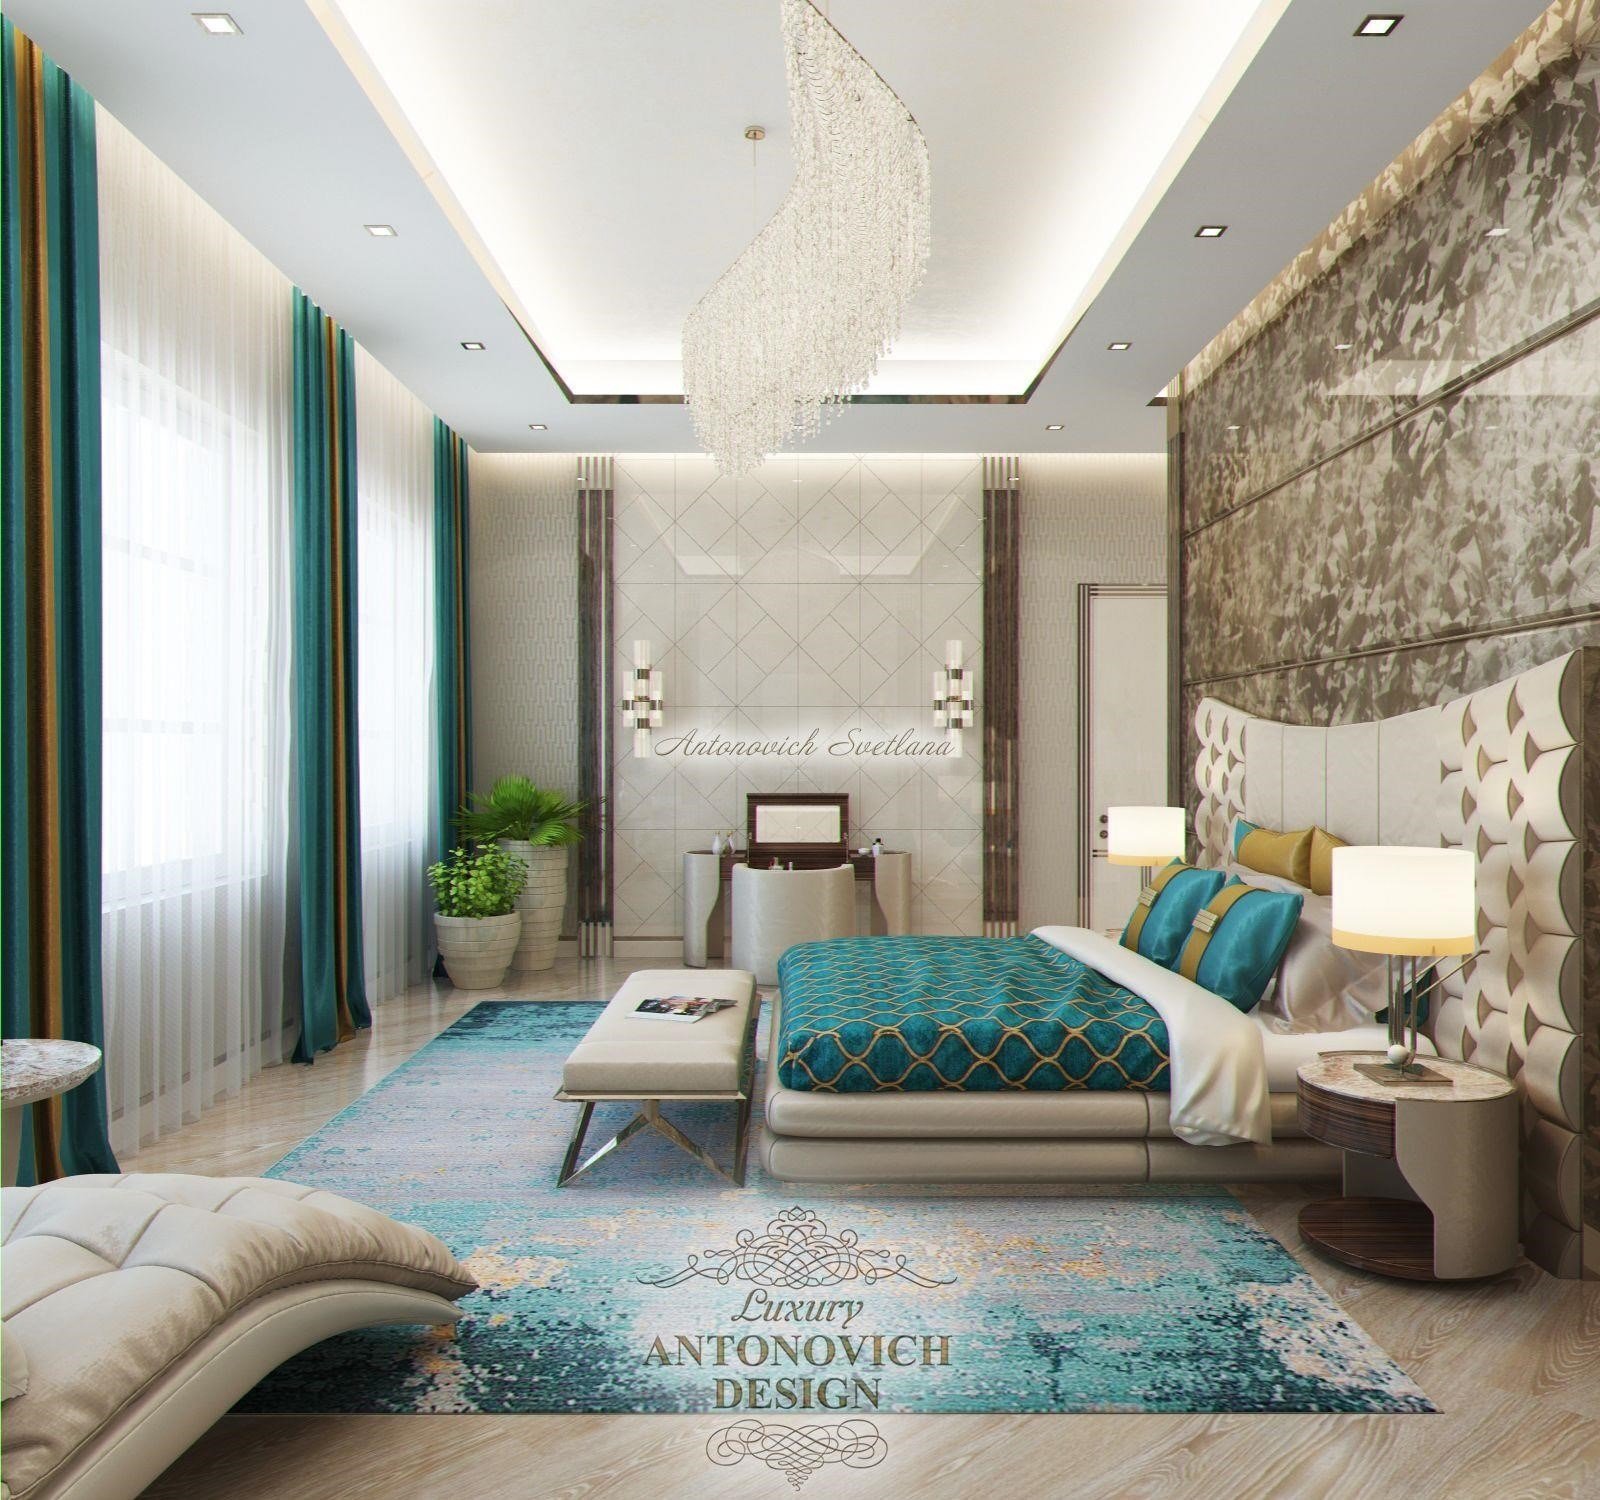 Ванная с голубой мозаикой Luxury ANTONOVICH DESIGN